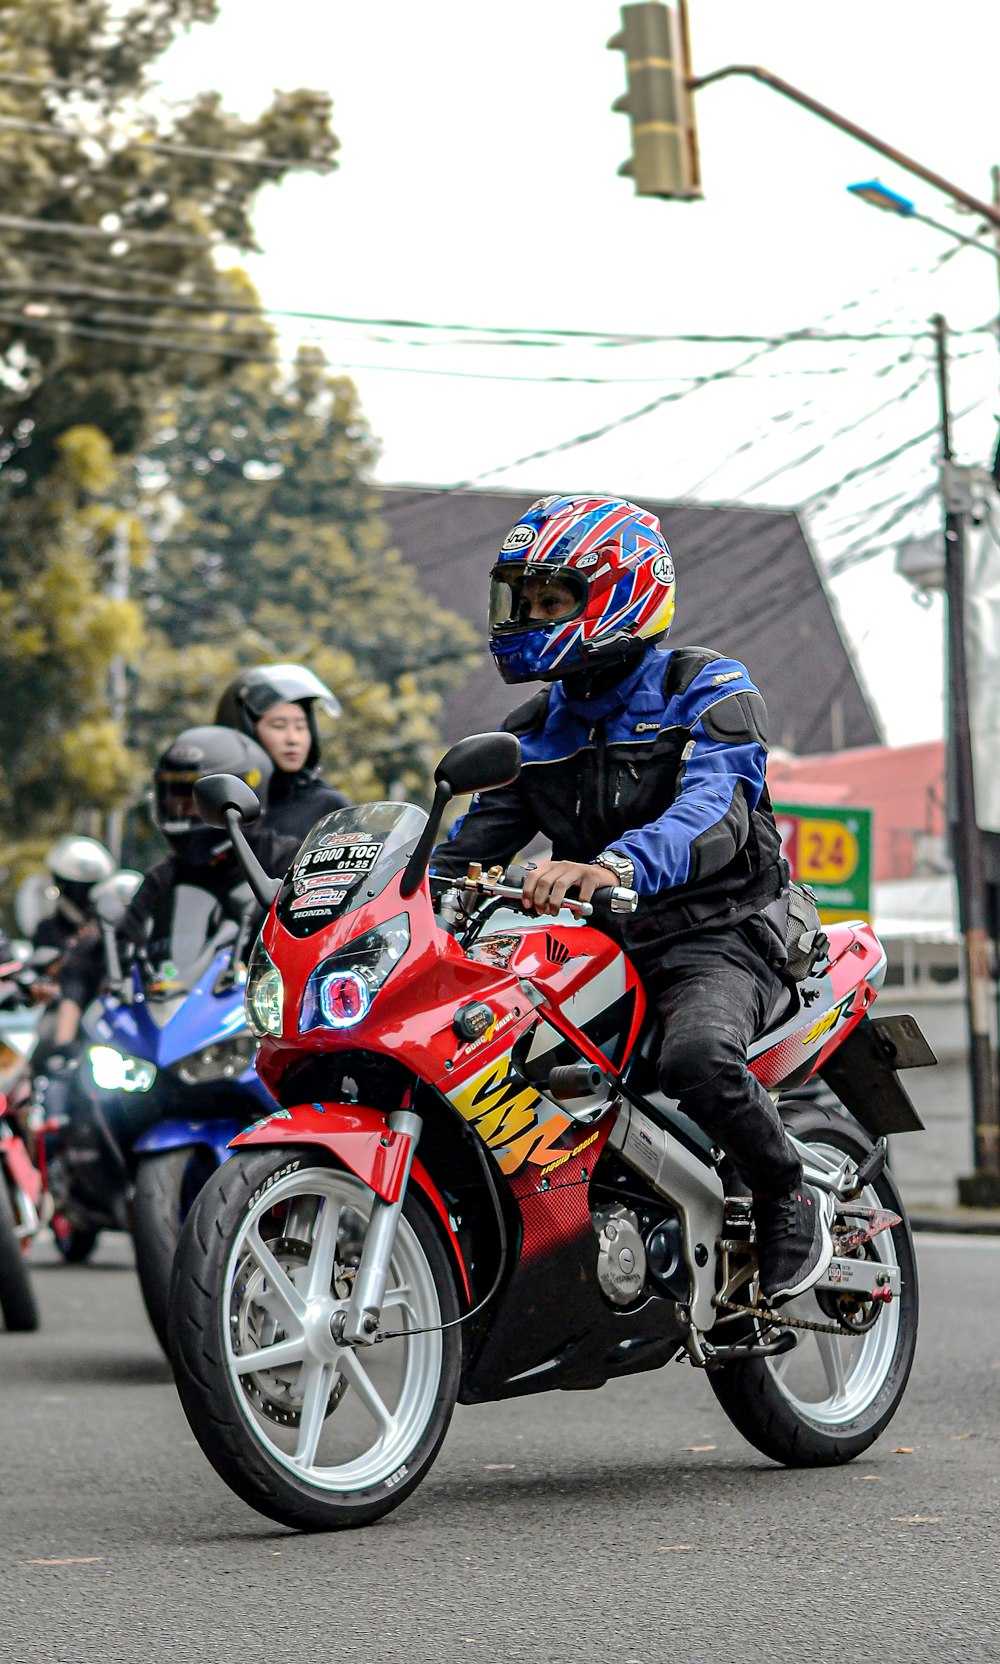 Un homme conduisant une moto rouge dans une rue